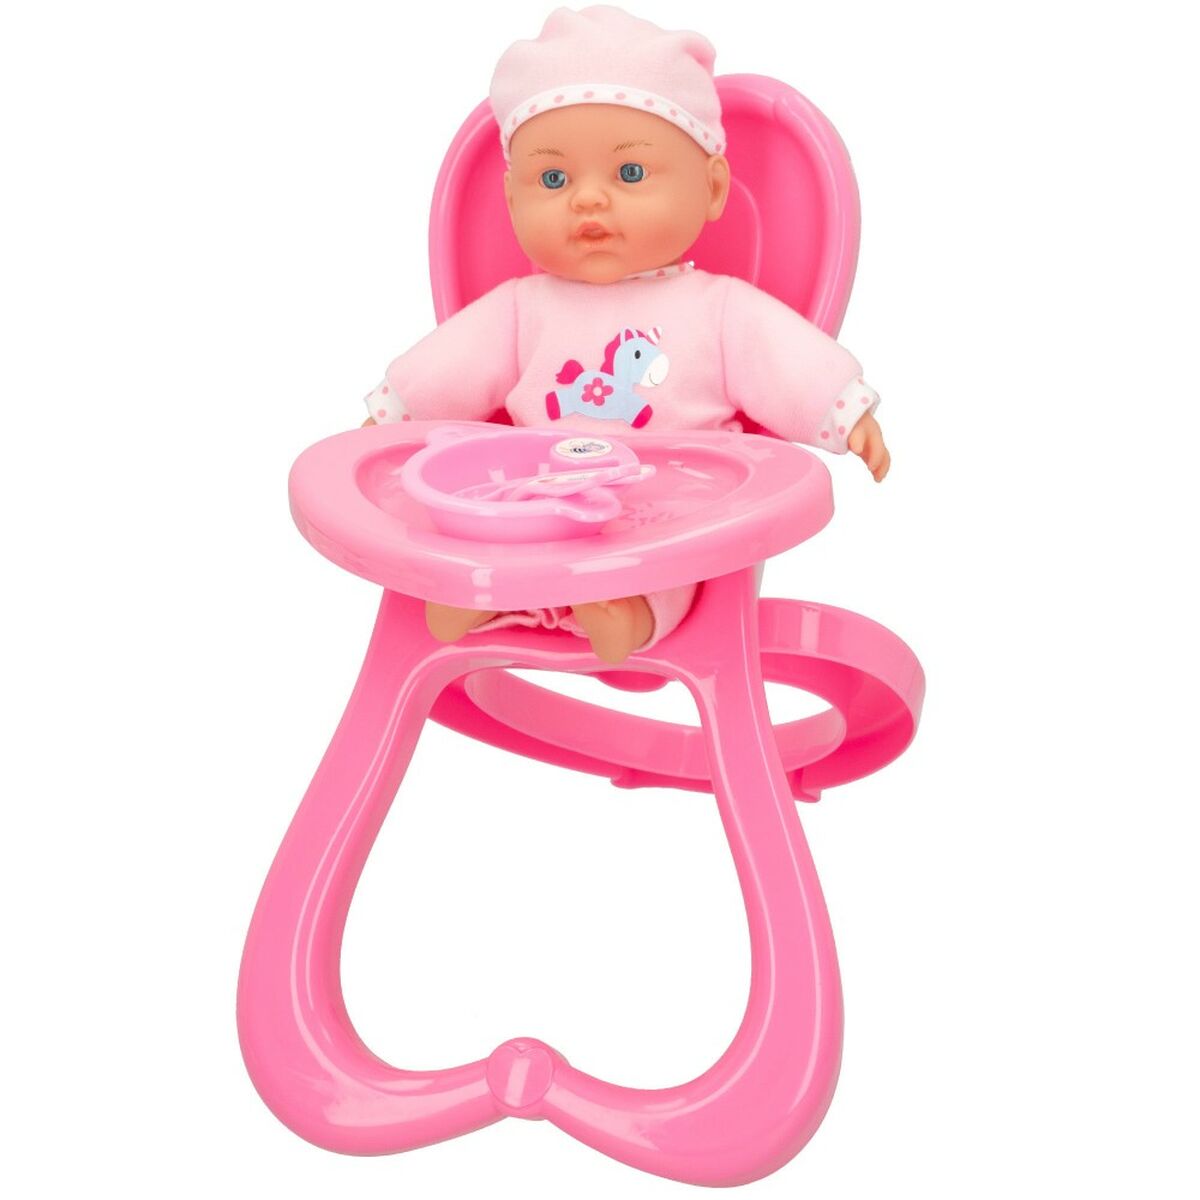 Baby doll Colorbaby 2 Unità 22,5 x 34,5 x 33,5 cm - Disponibile in 3-4 giorni lavorativi